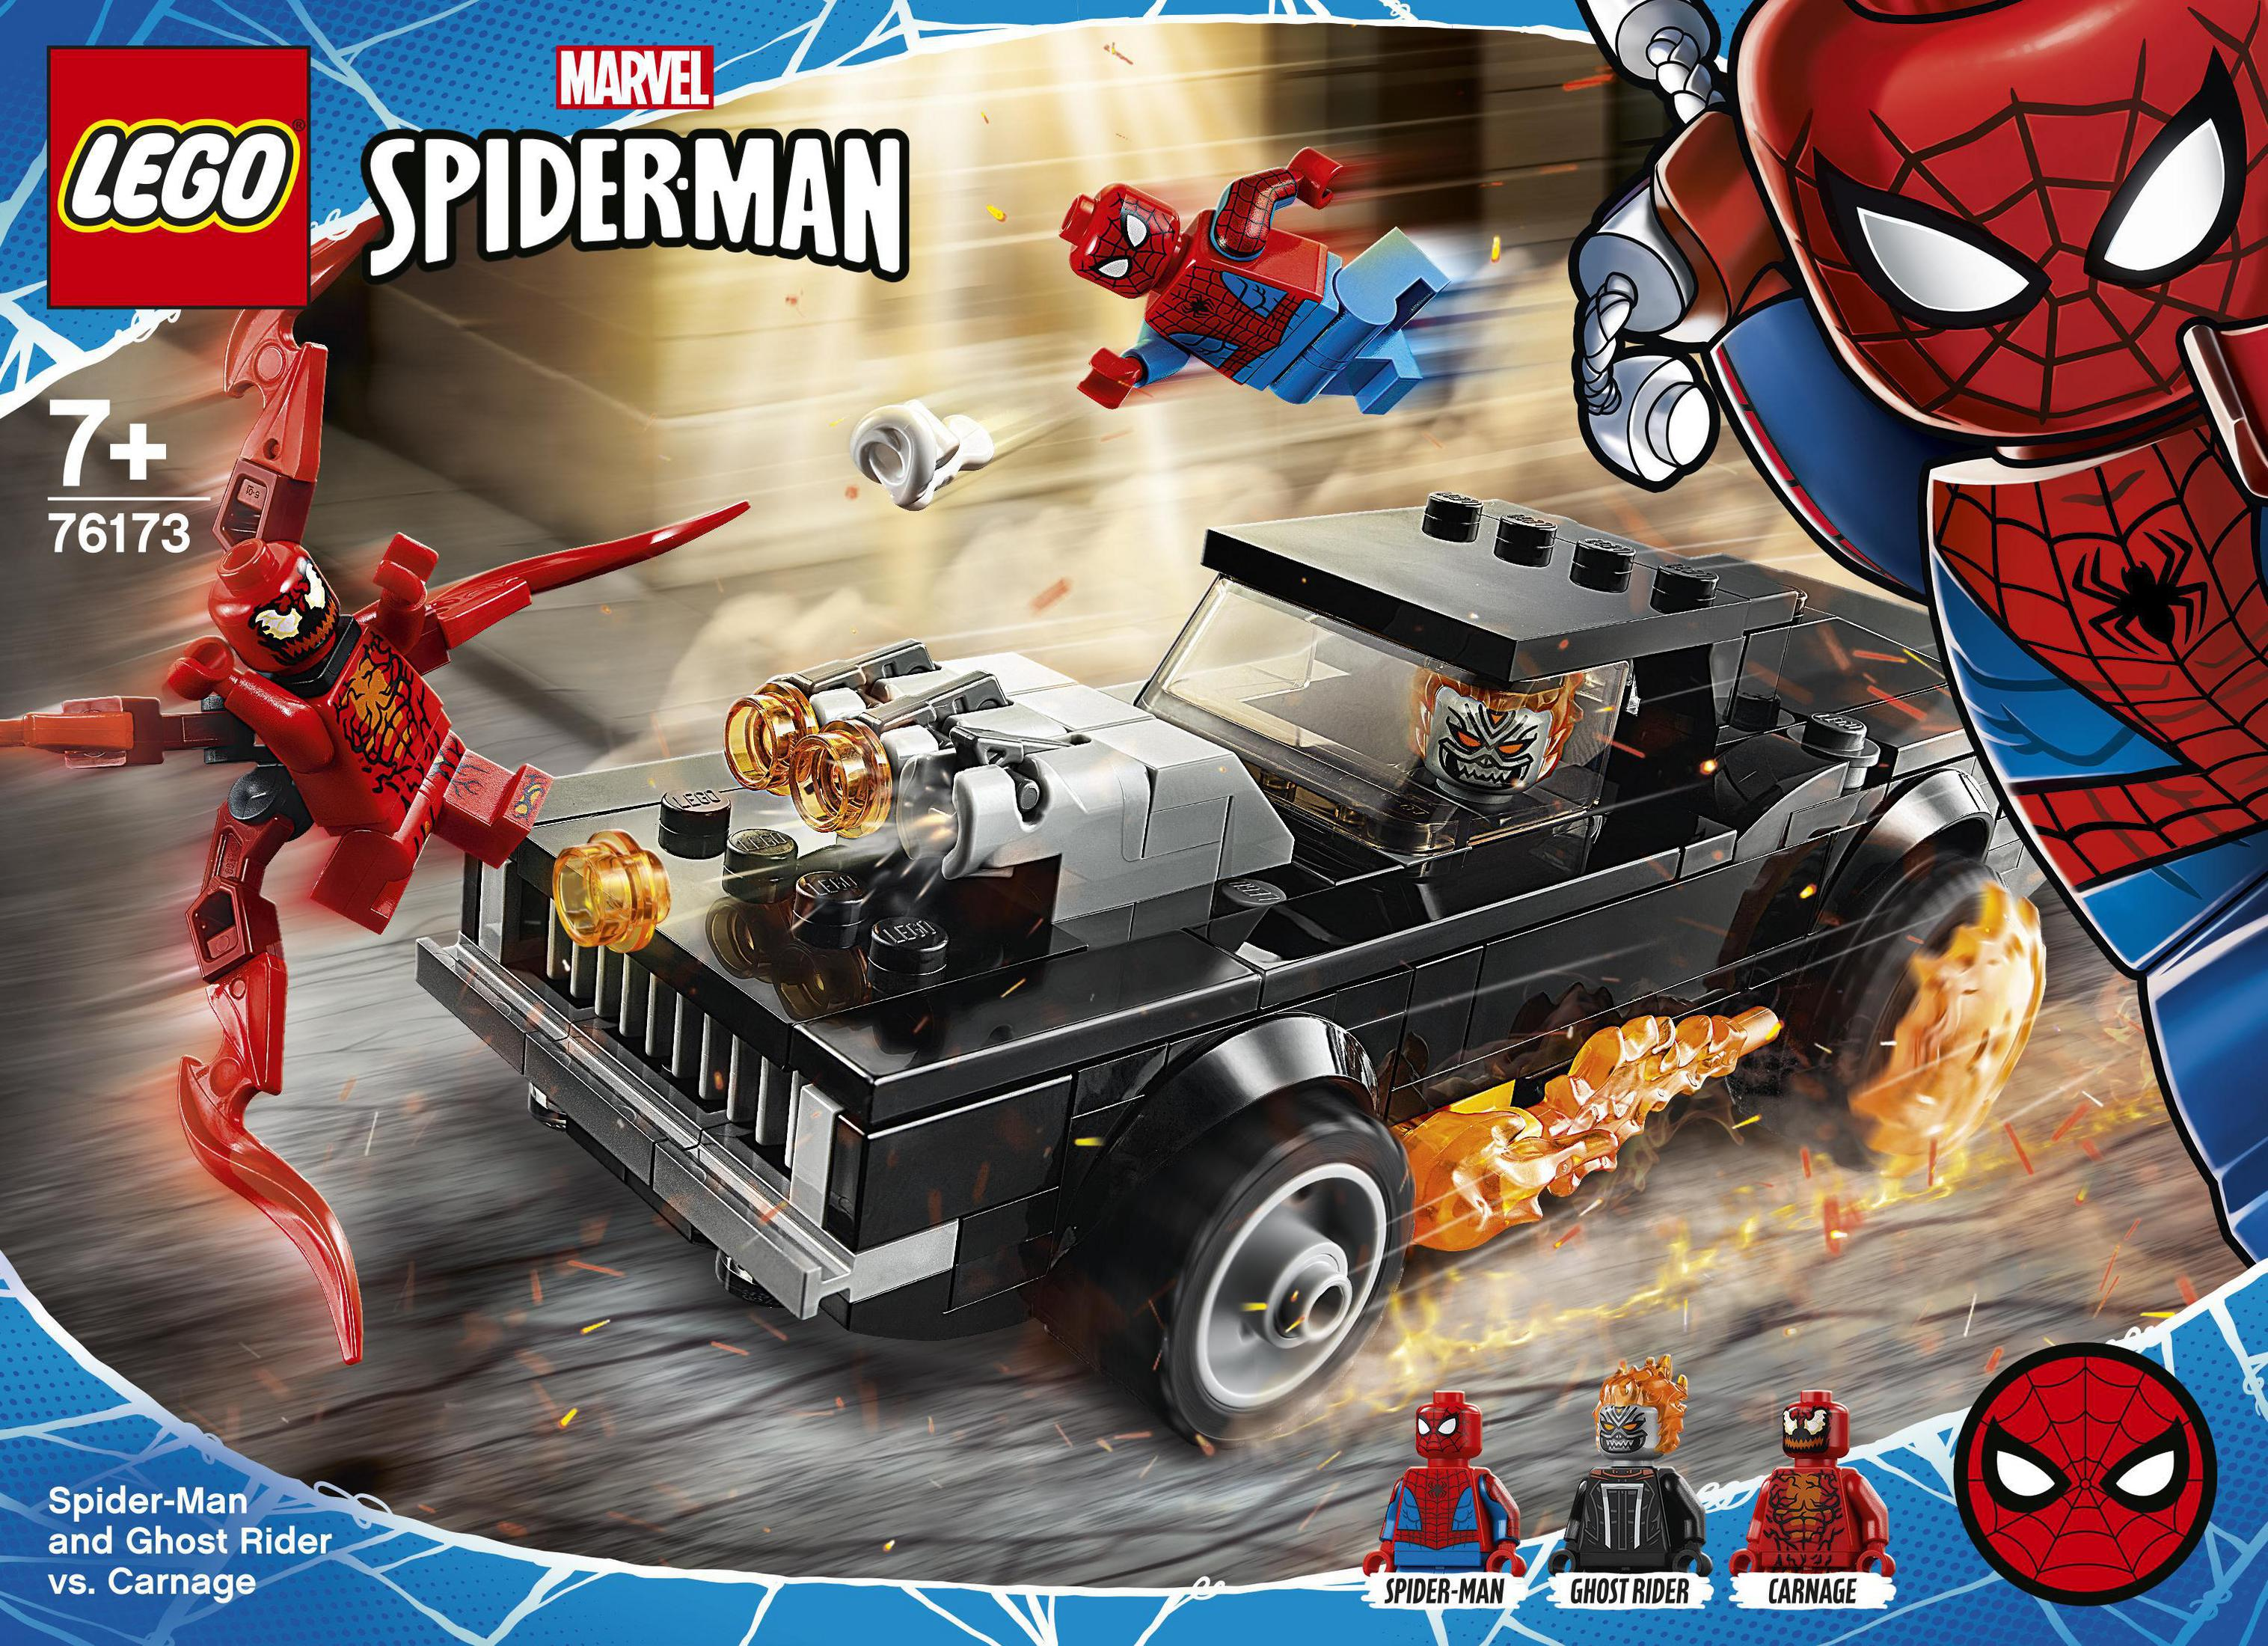 LEGO 76173 SPIDER-MAN UND VS. GHOST CARNAGE Mehrfarbig RIDER Minifiguren